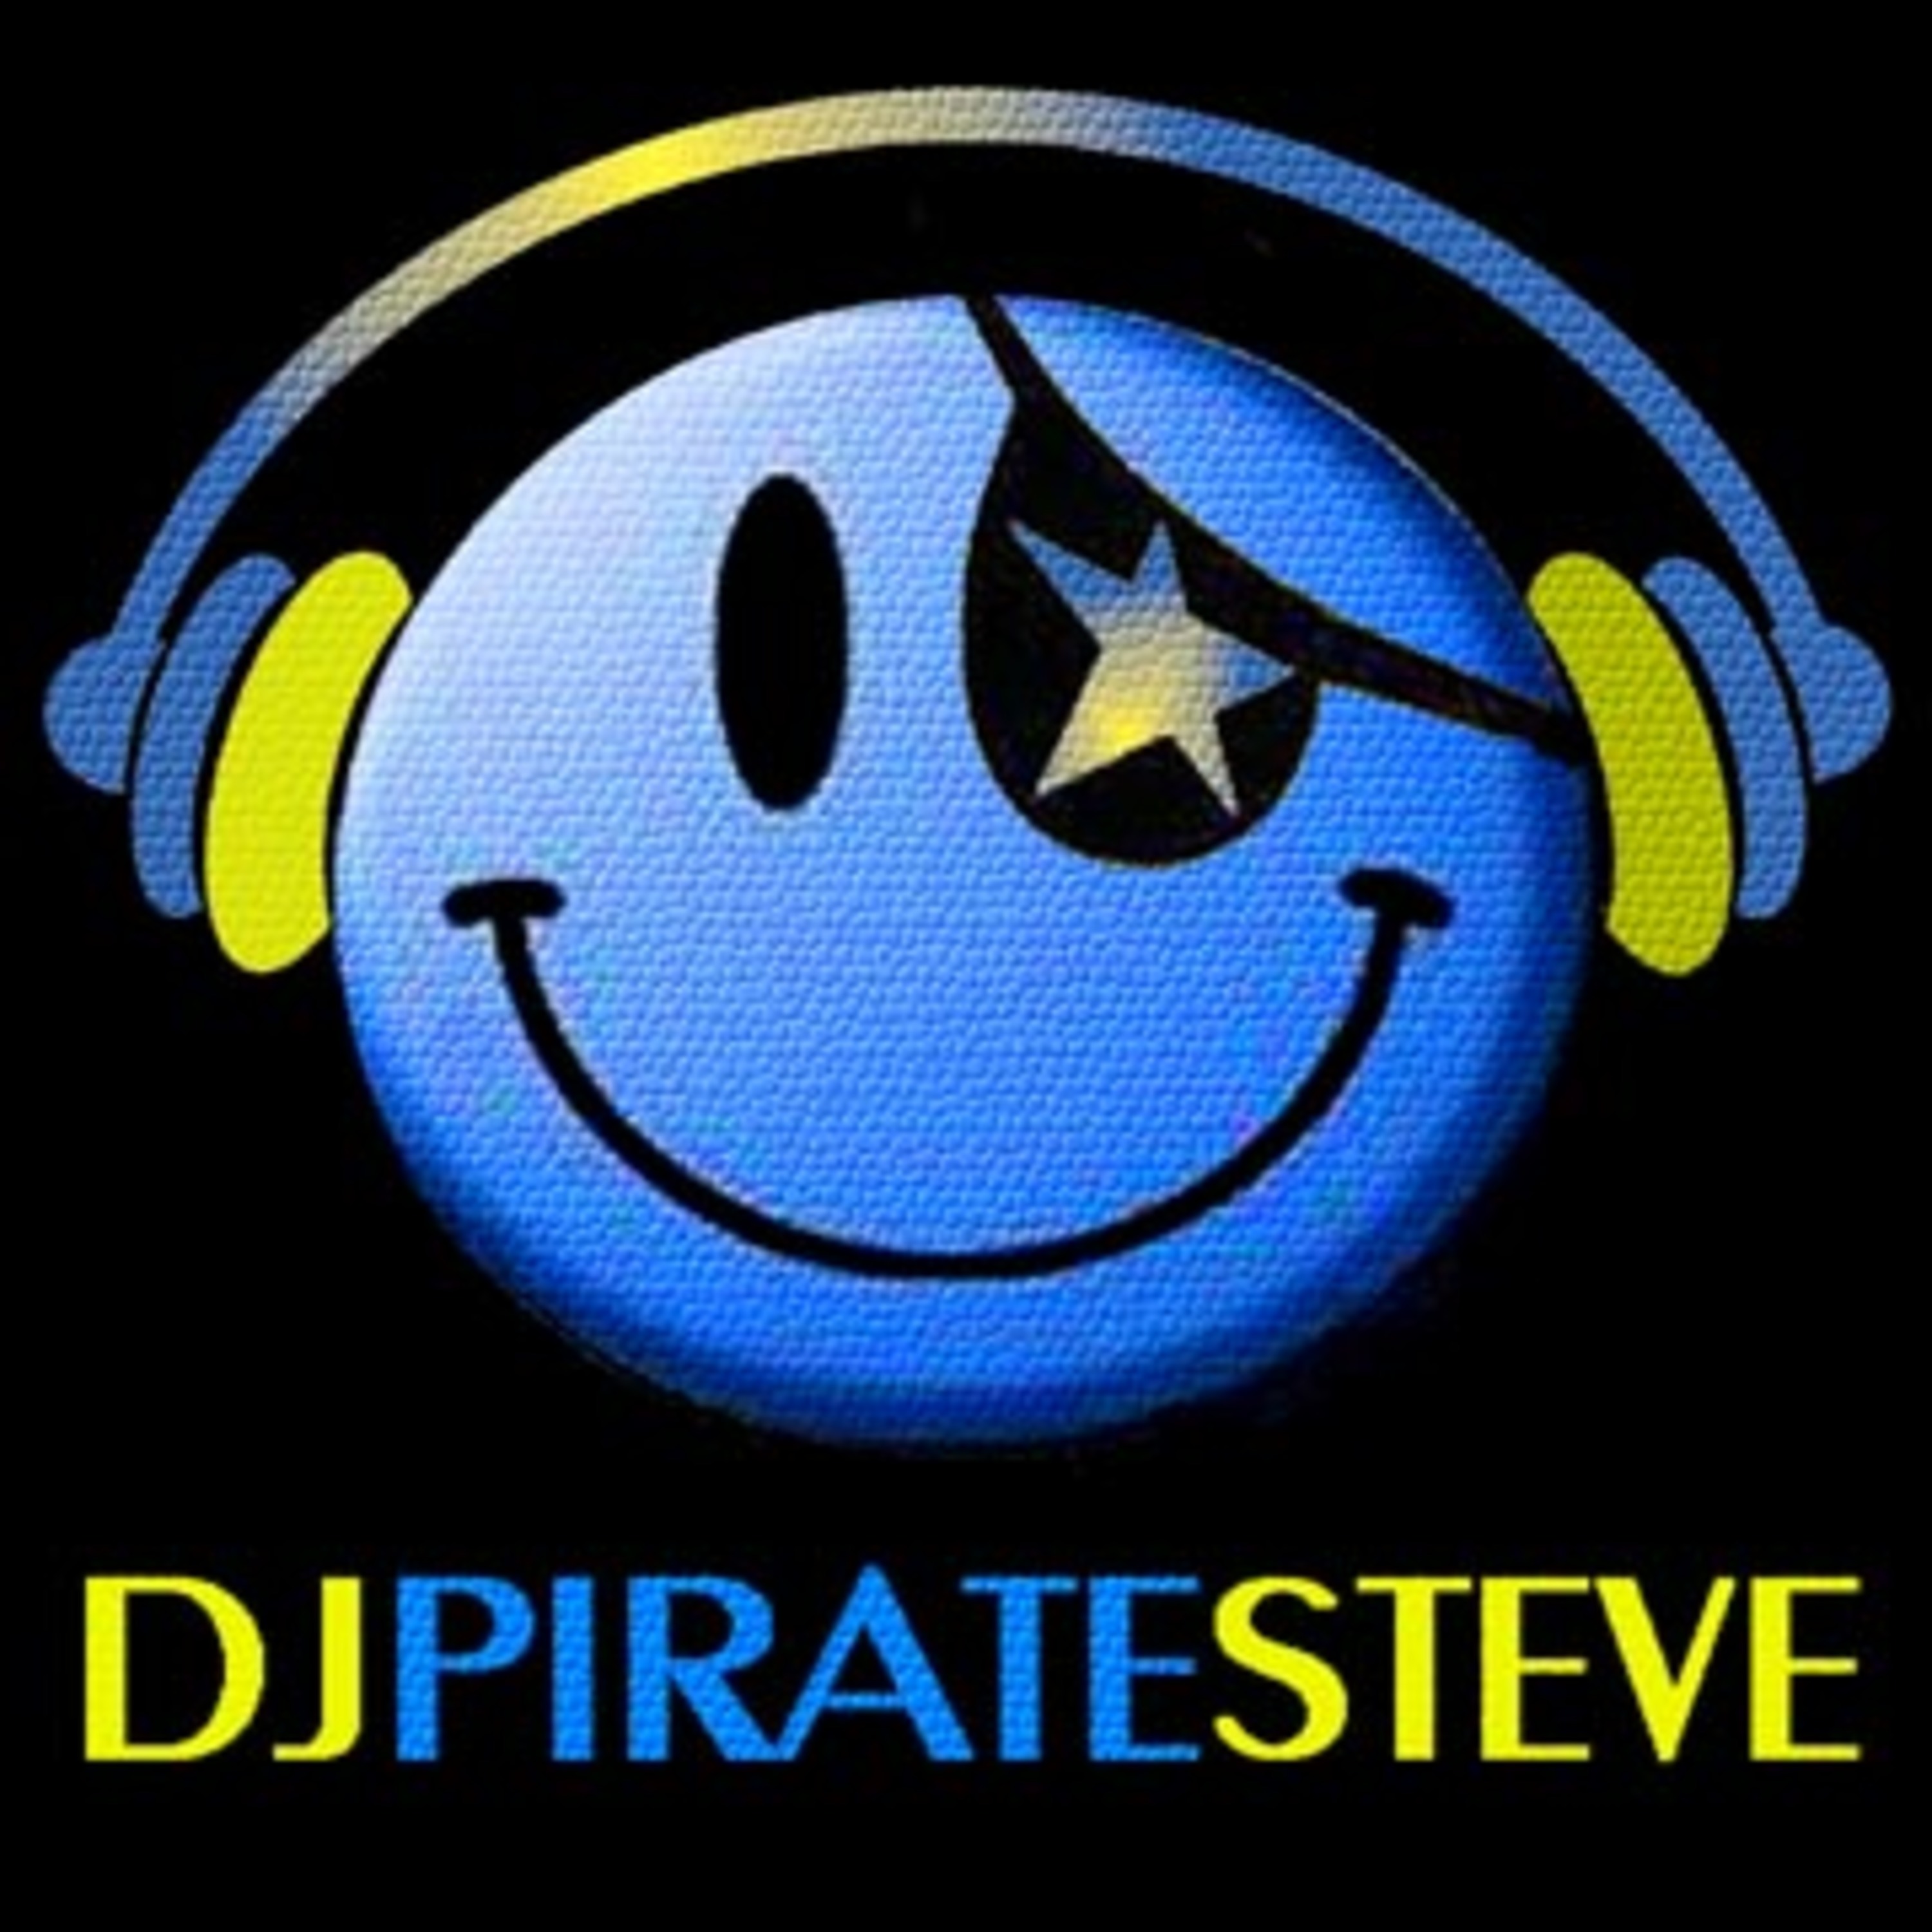 DJ PIRATE STEVE'S PODCAST